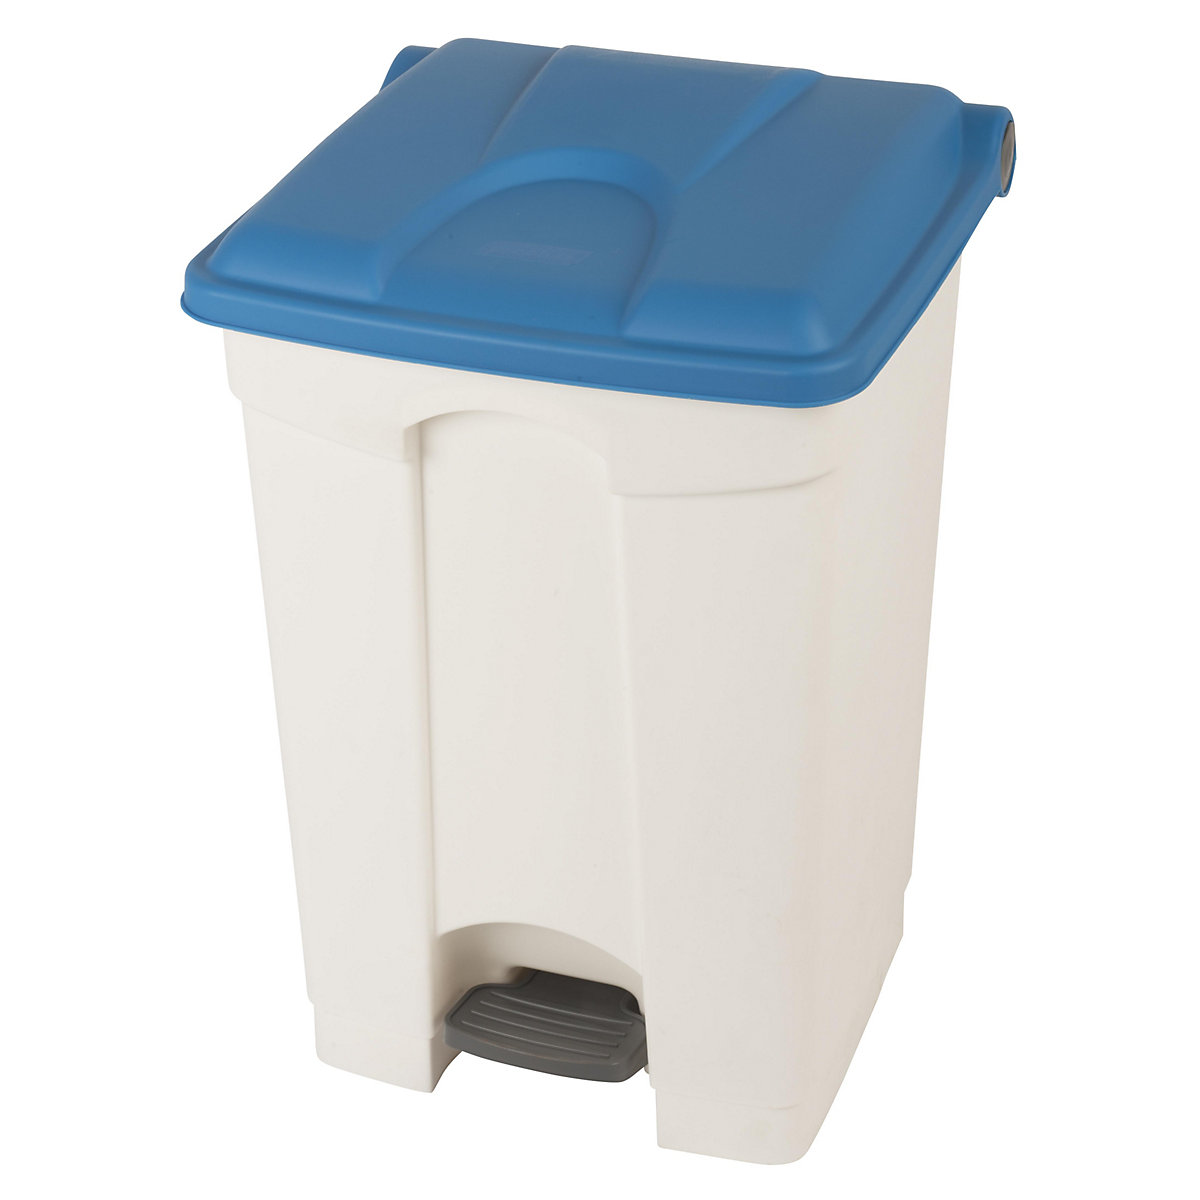 Spremnik za otpad s papučicom, volumen 45 l, ŠxVxD 410 x 600 x 400 mm, u bijeloj boji, poklopac u plavoj boji-14